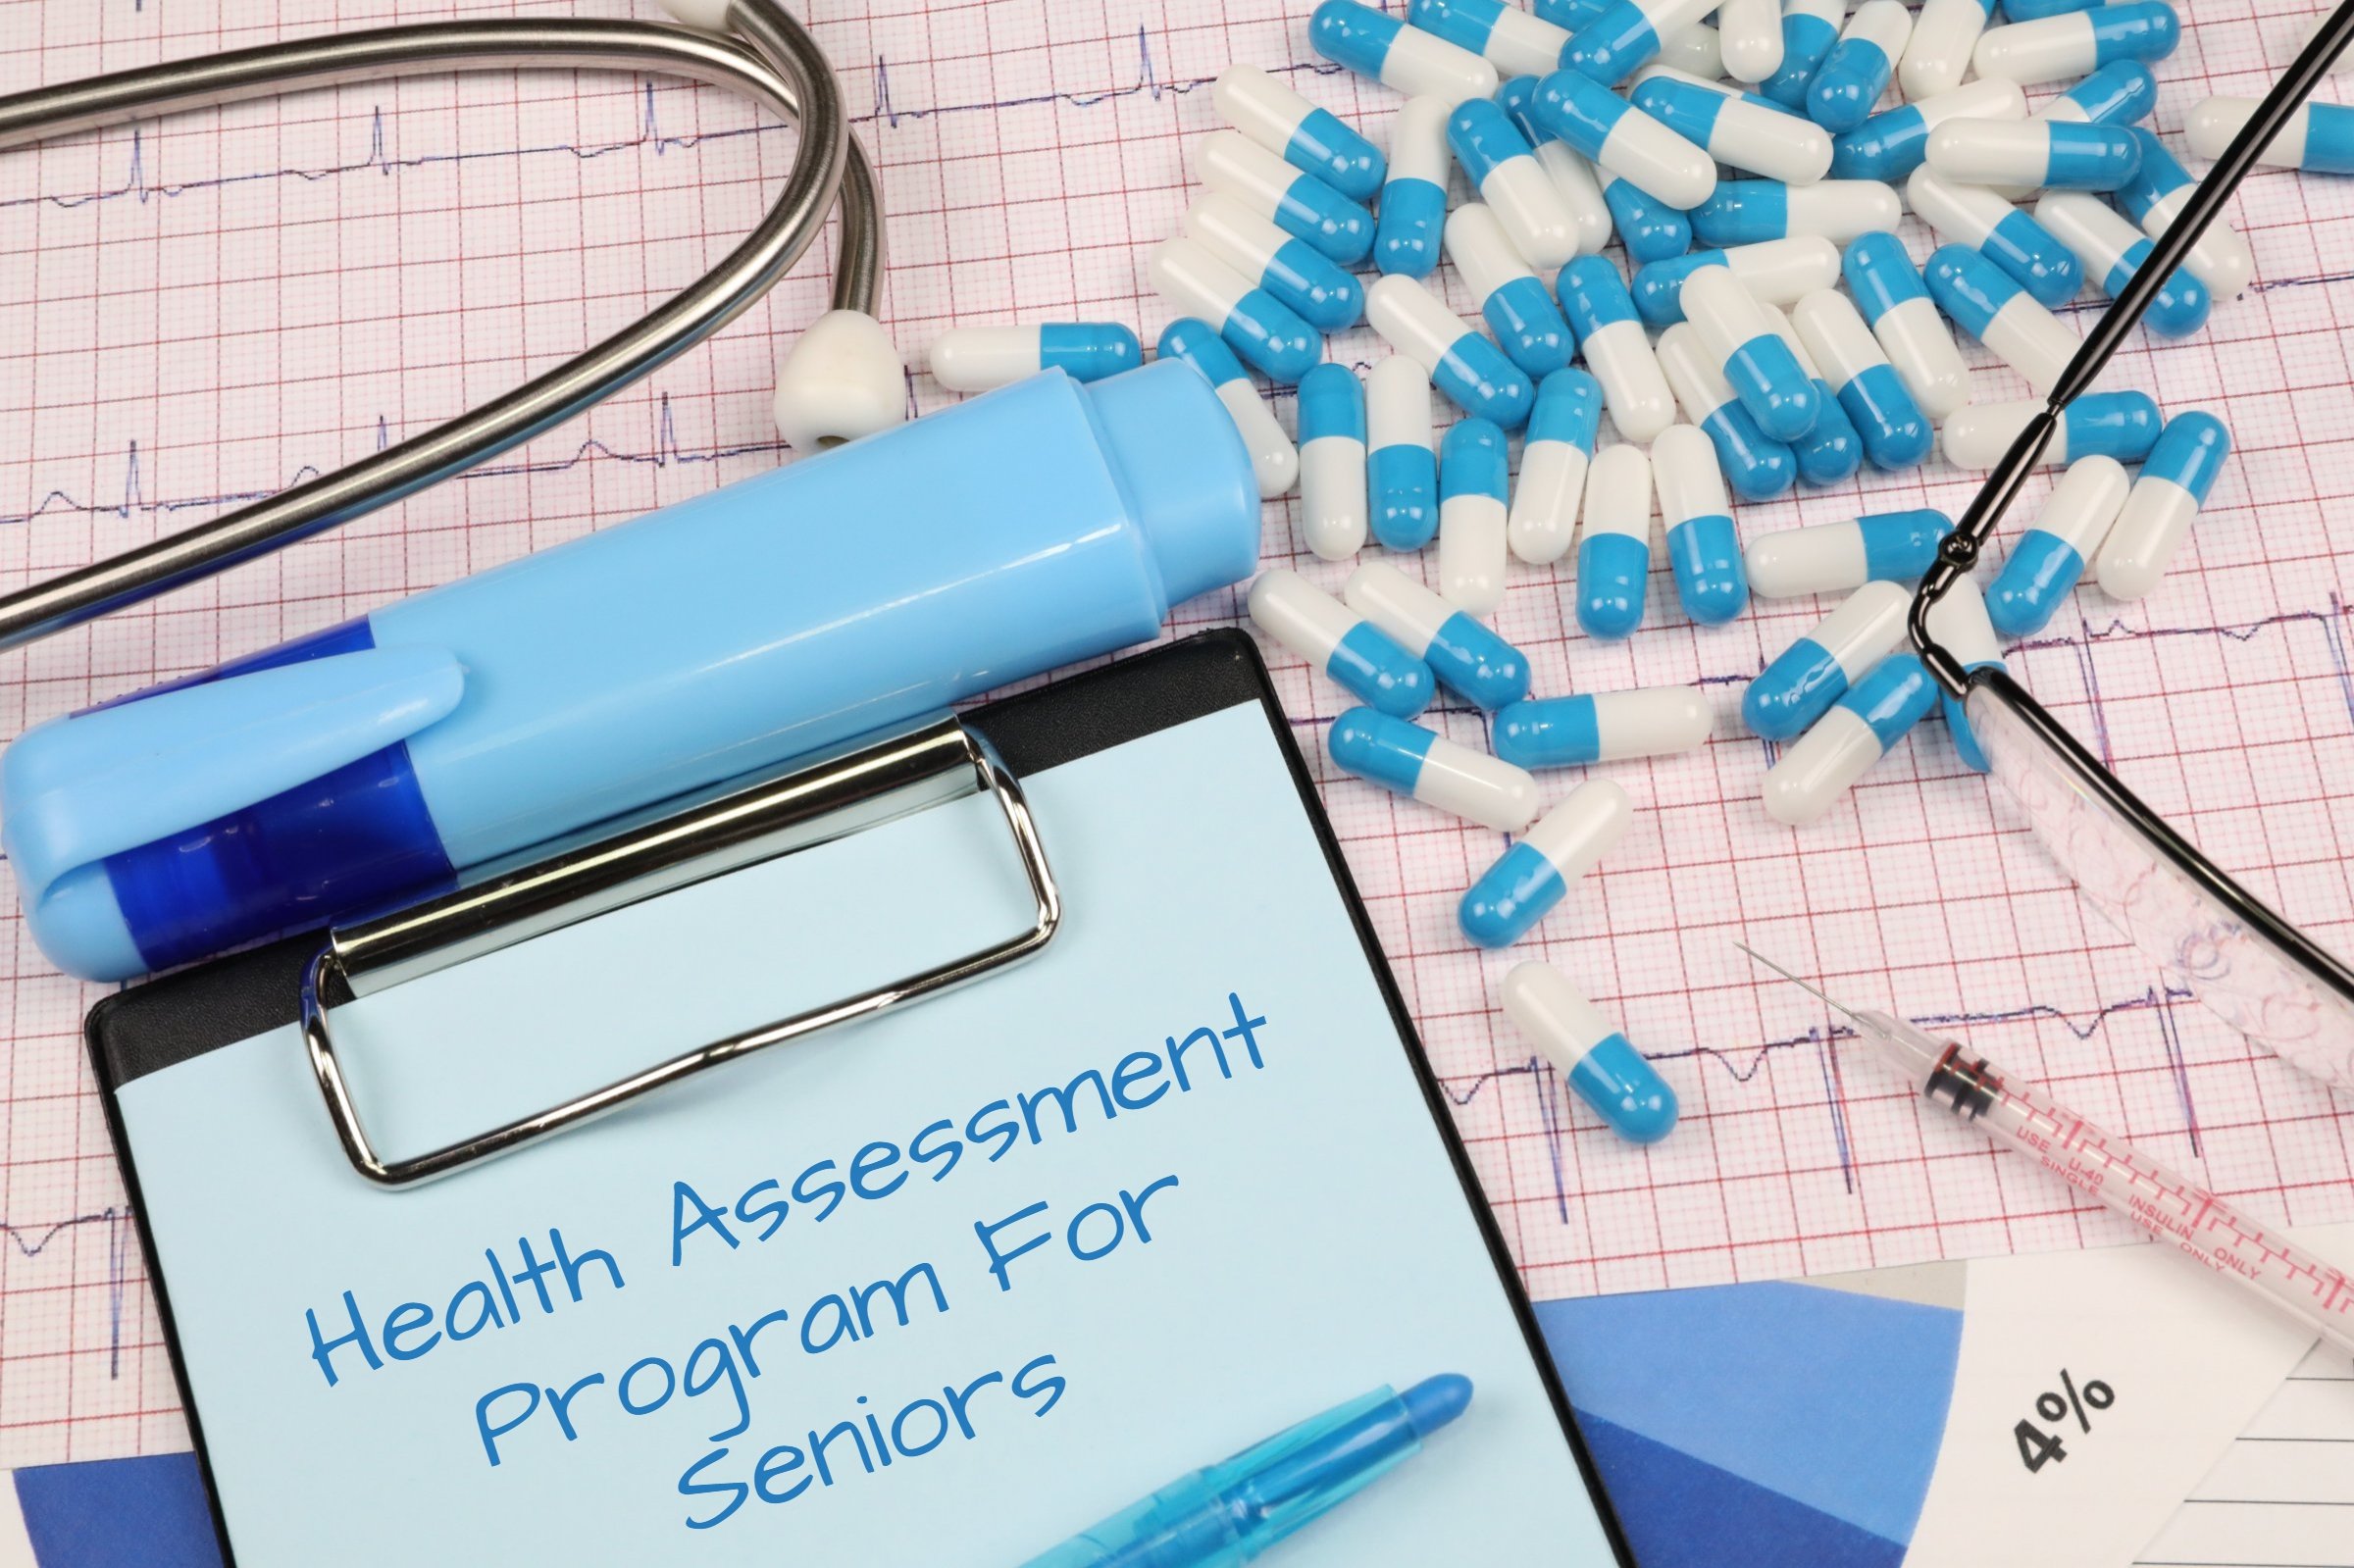 health assessment program for seniors